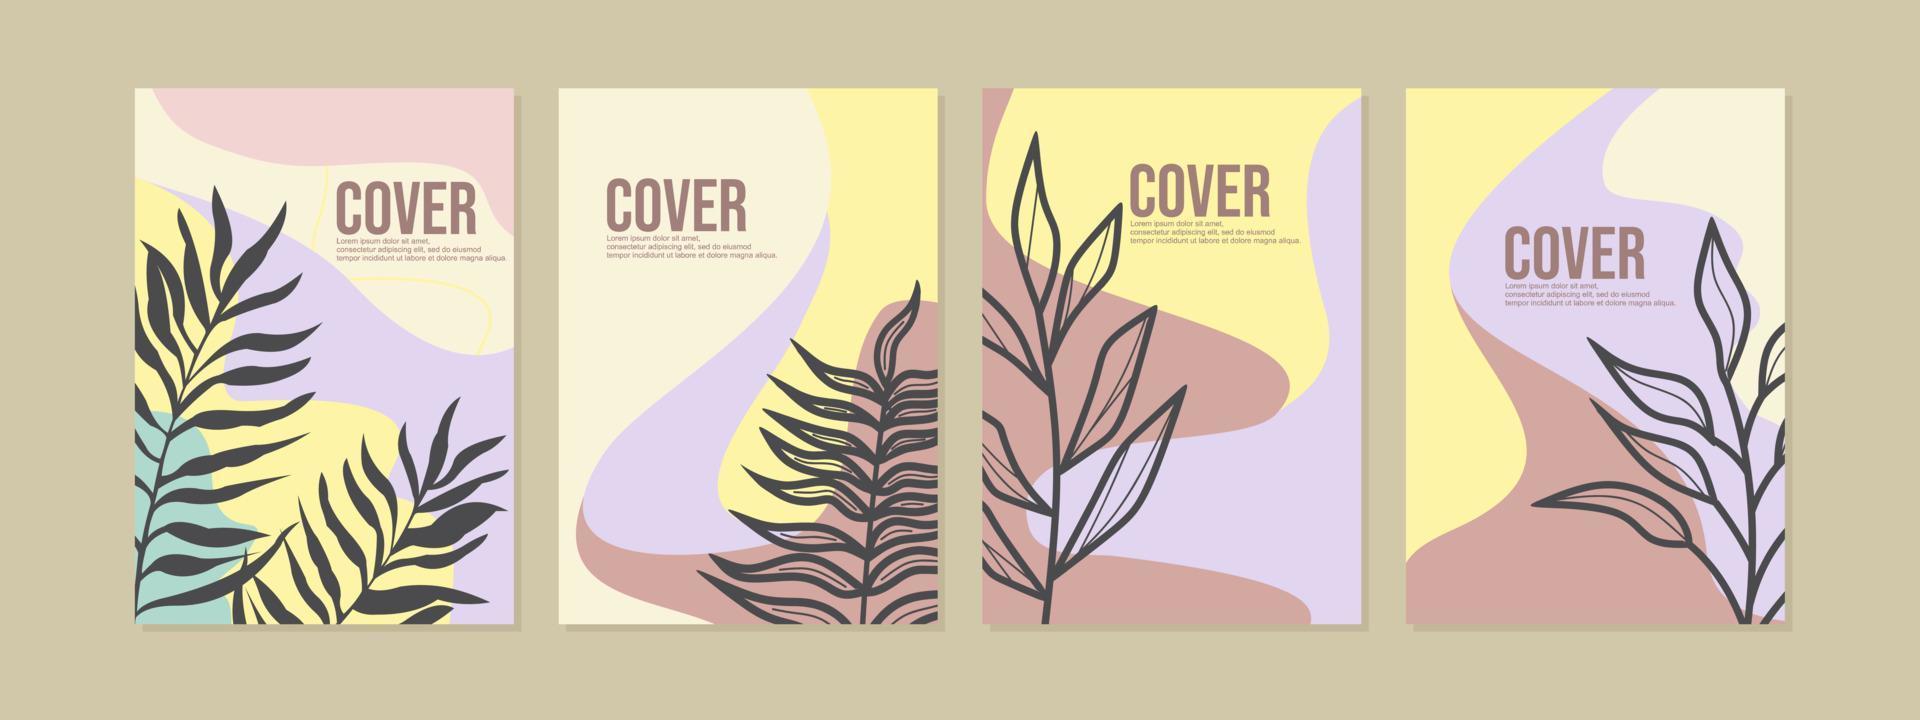 botanico stile moderno libro copertina design impostare. astratto sfondo con silhouette foglie.a4 copertina per taccuino, diario, catalogo, invito. vettore